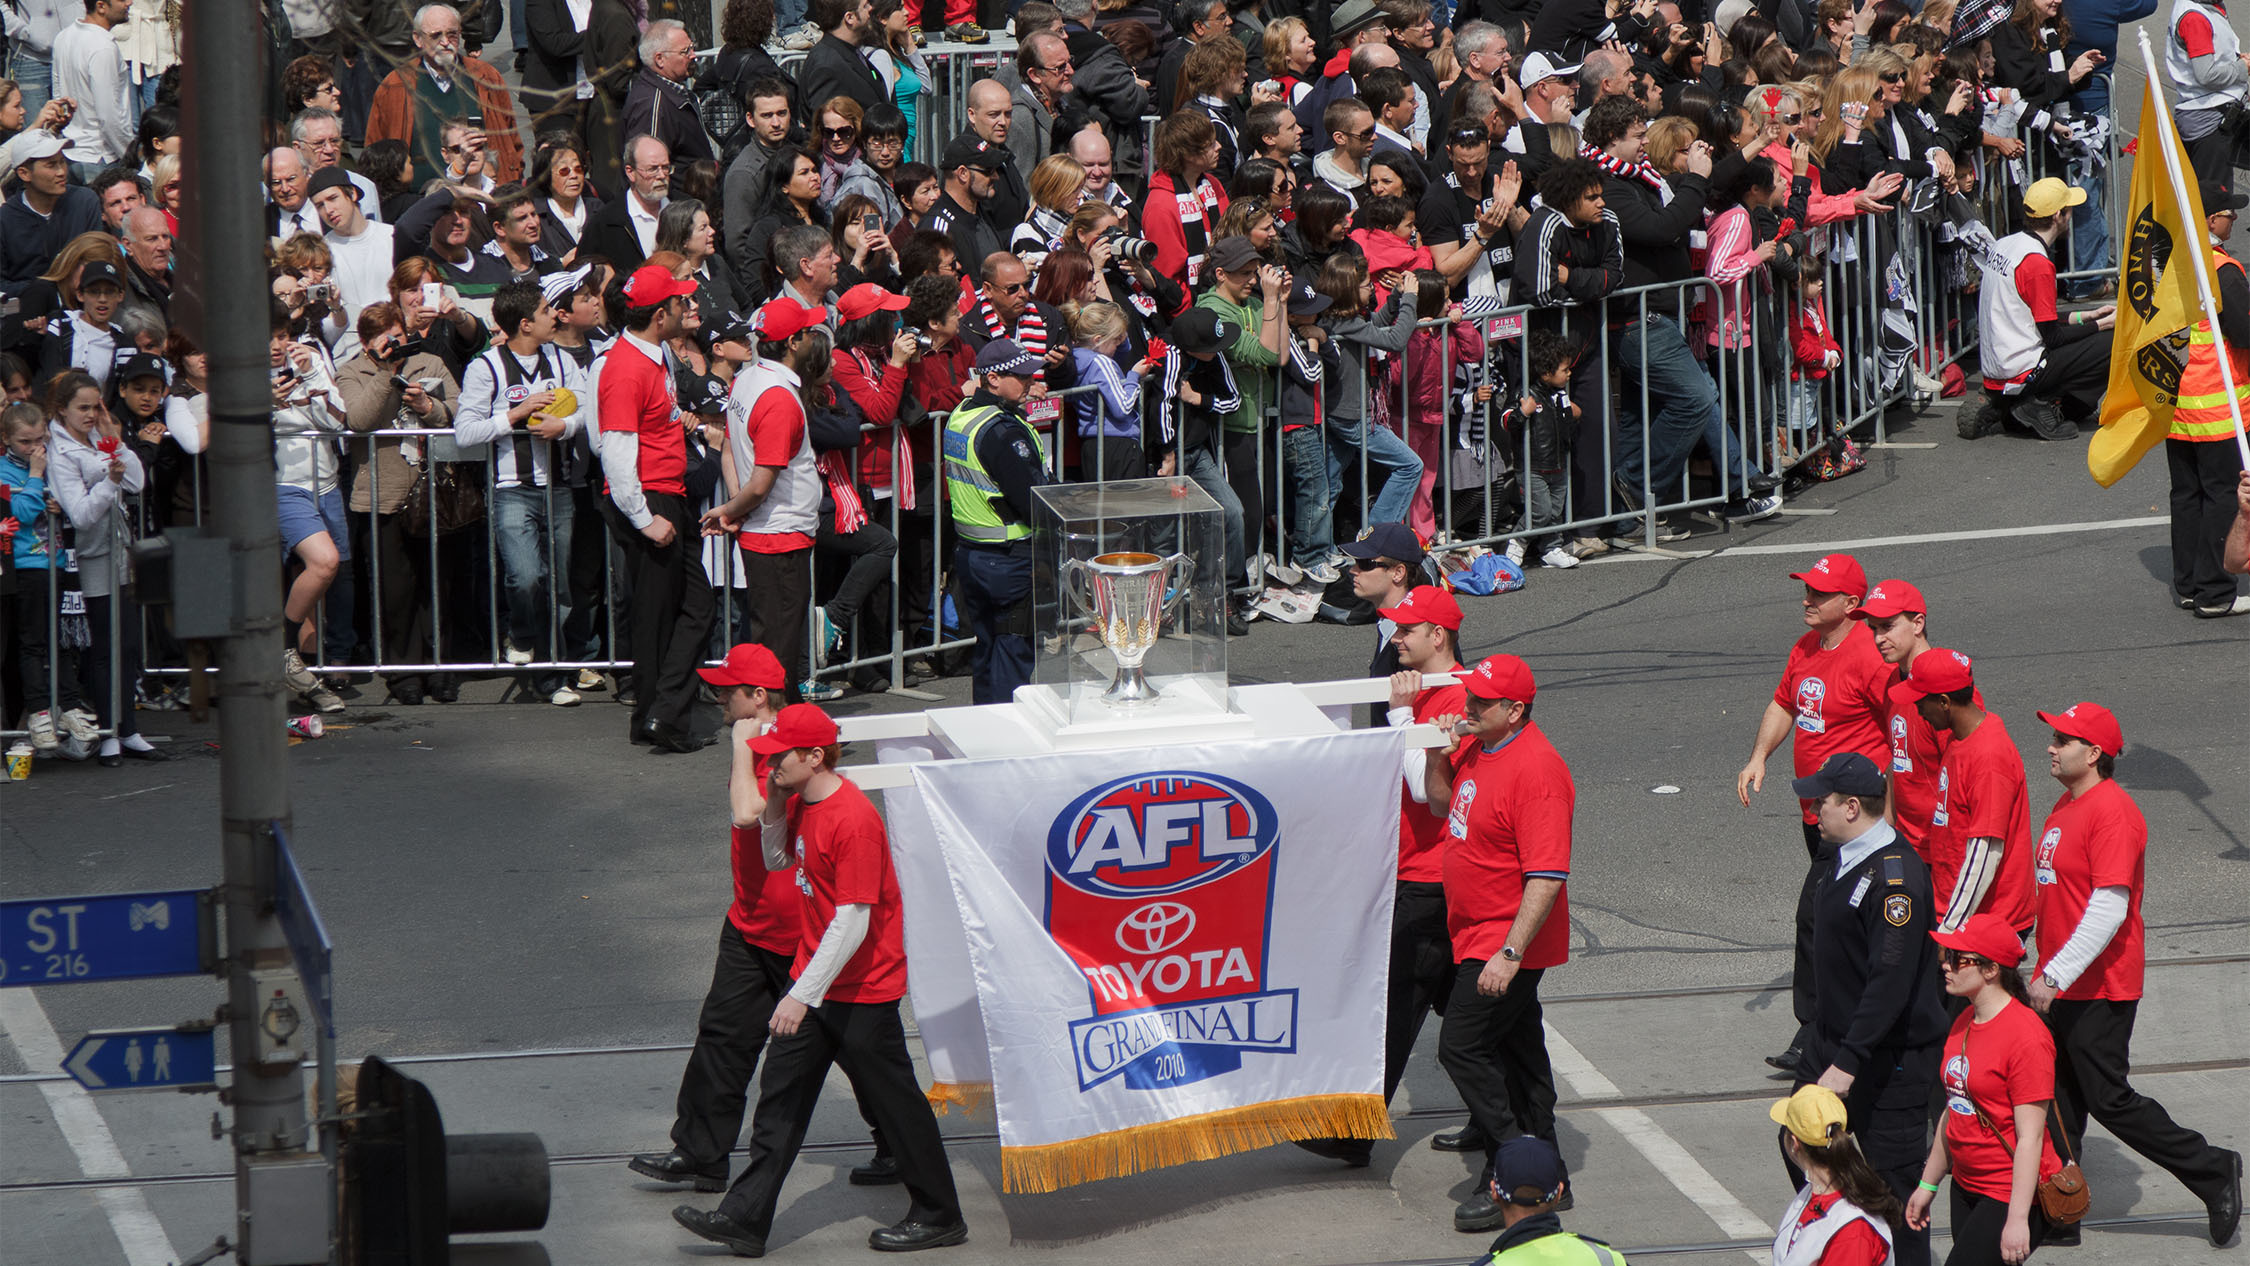 AFL Grand Final Parade returns to Melbourne on September 23